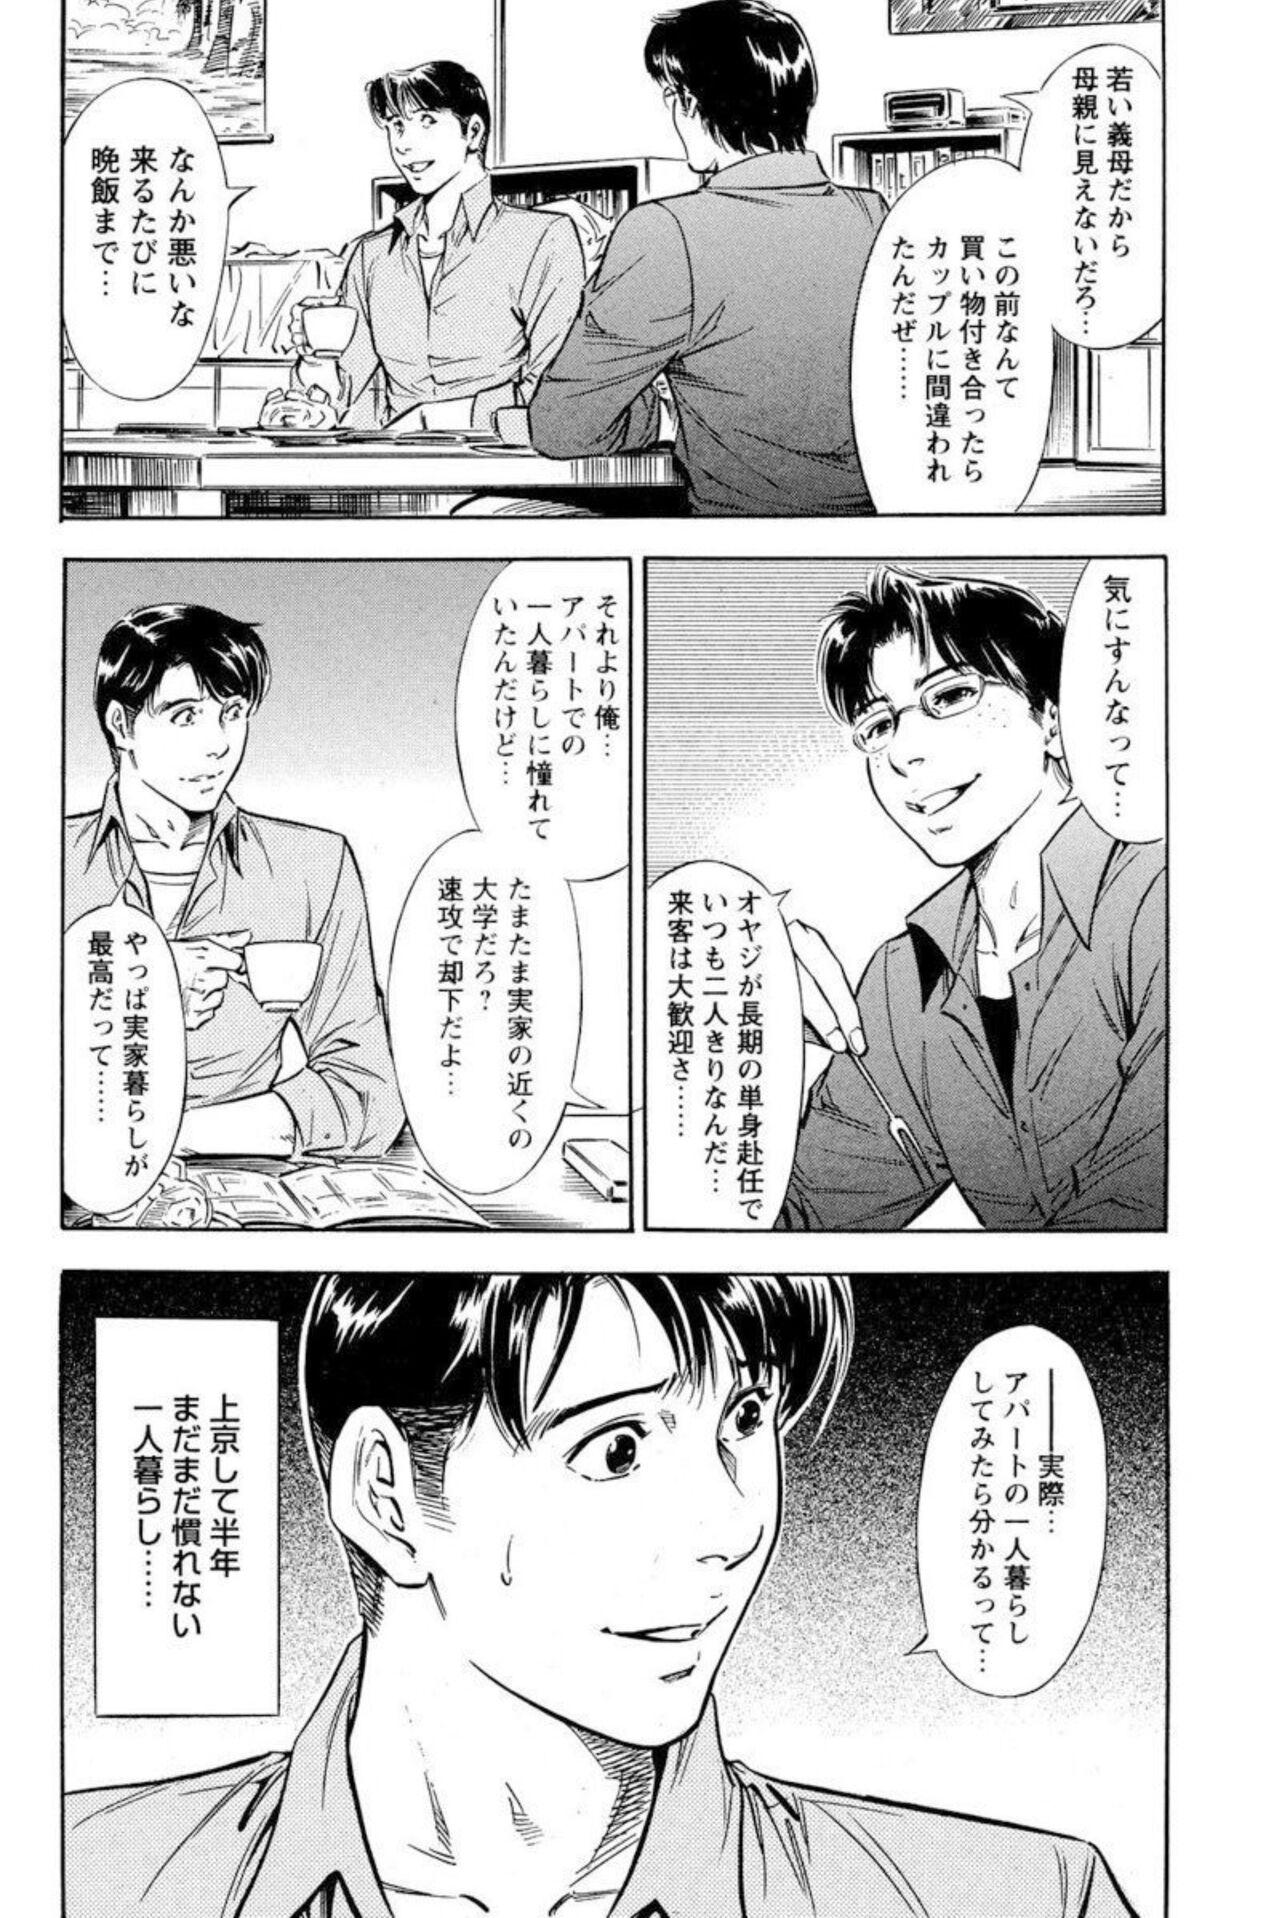 Bear Yūjin no Haha ni Yukkuri Dashi re 【 Bunsatsuban 】1 Creampies - Page 6